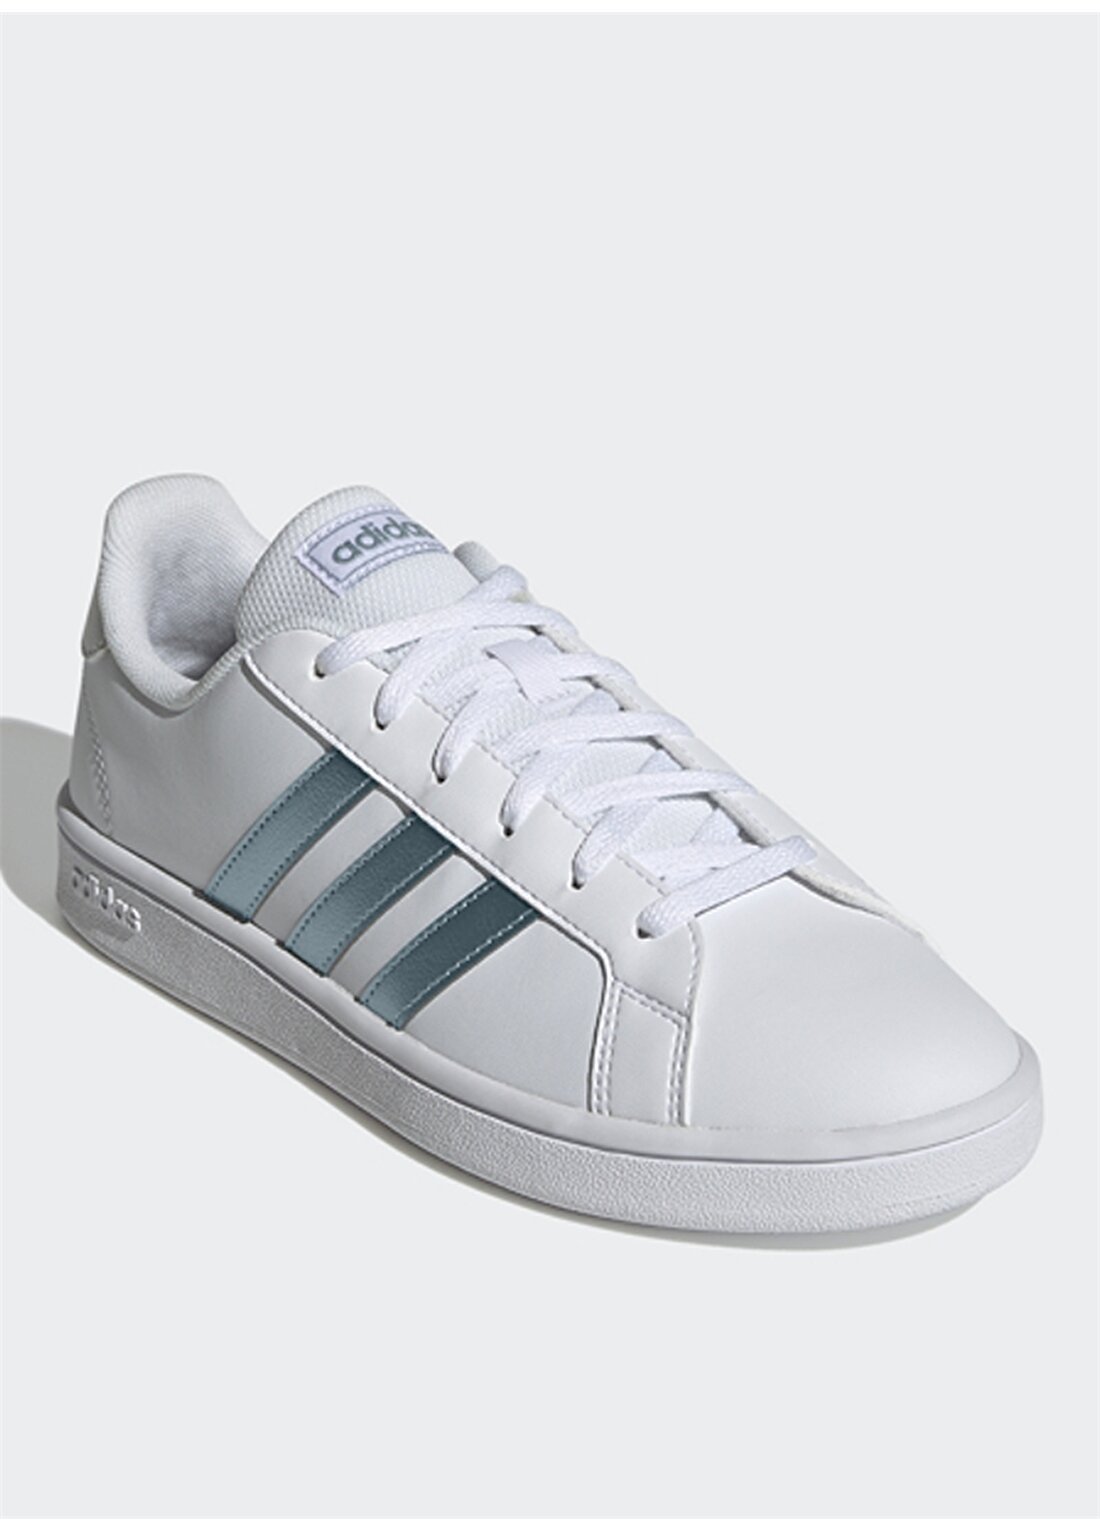 Adidas GZ8164 Grand Court Base Beyaz - Metalik Kadın Lifestyle Ayakkabı